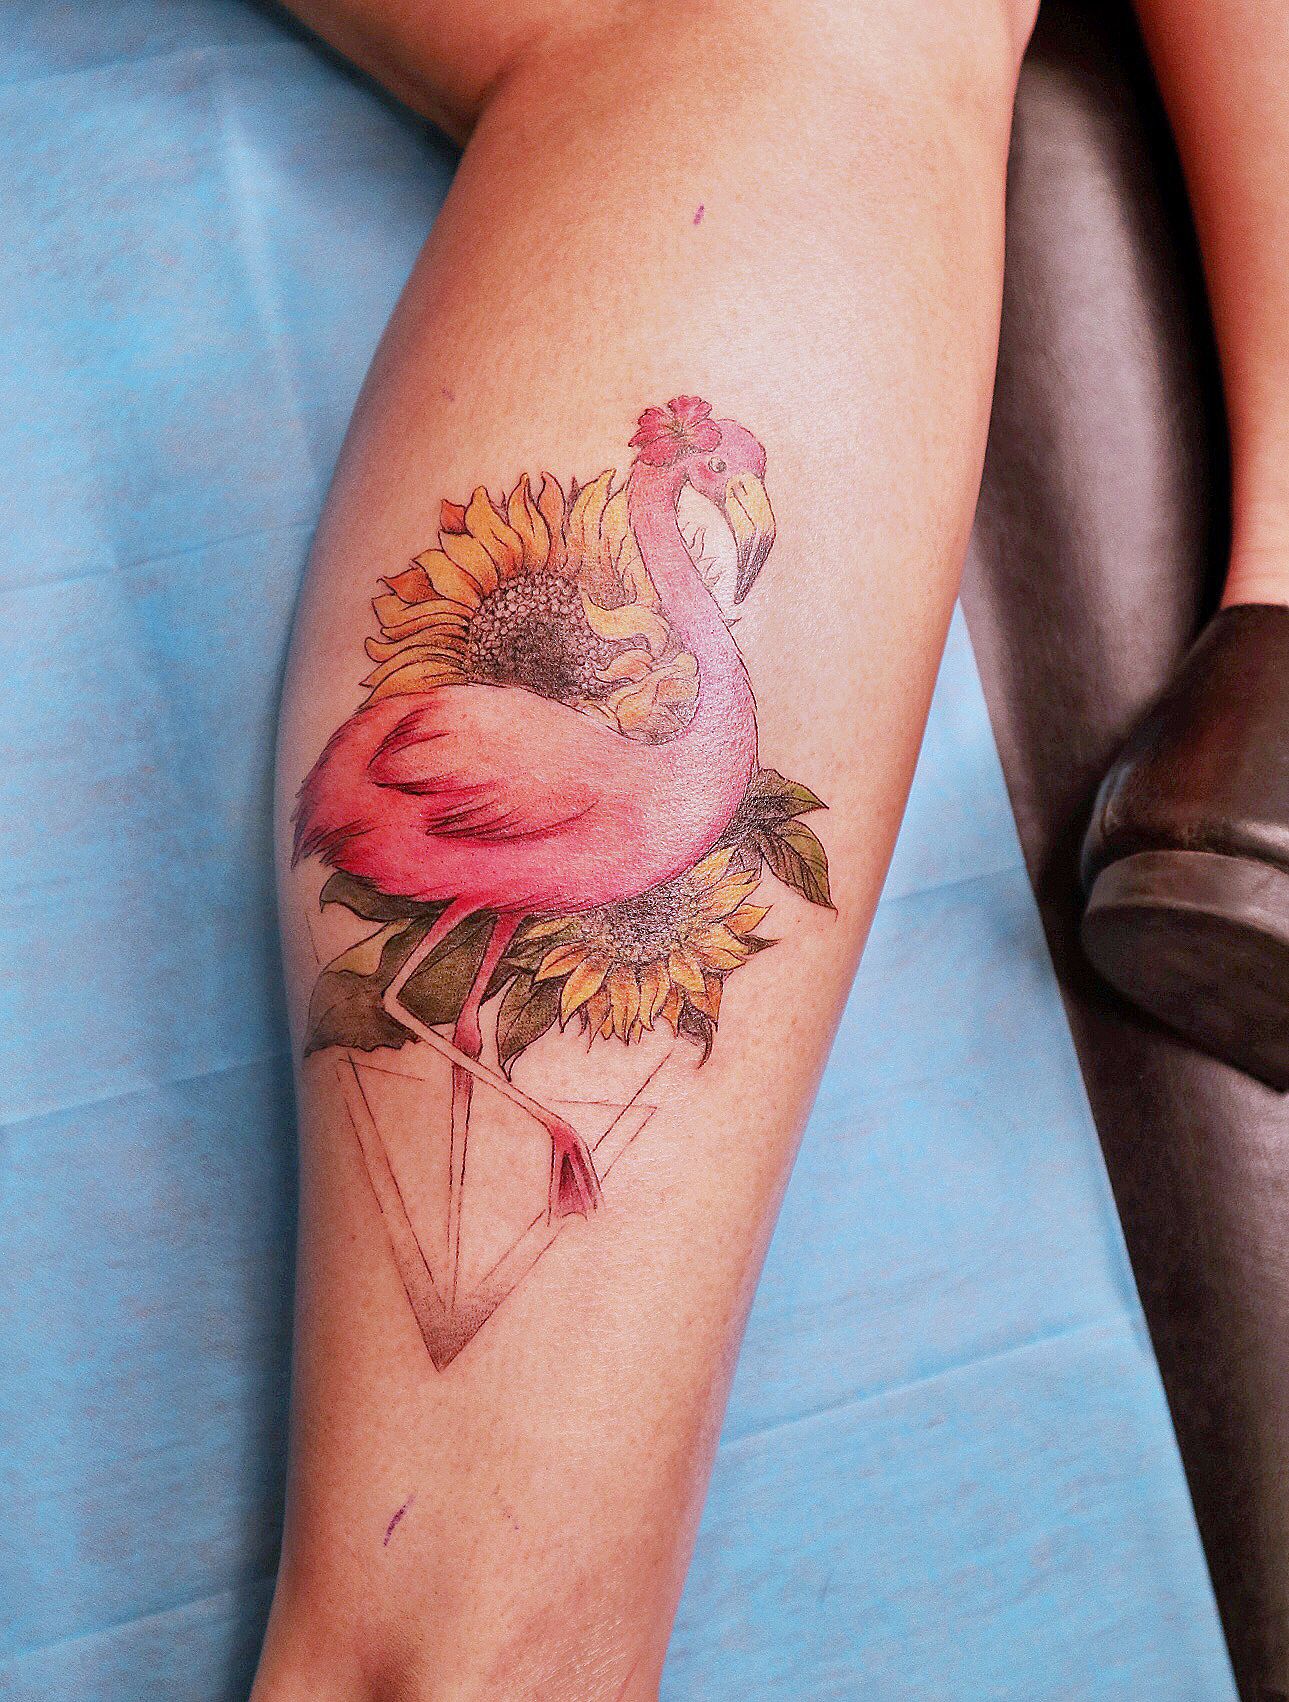 TATTOOS.ORG — Flamingo Tattoo Artist: •DRAG• N Y C...